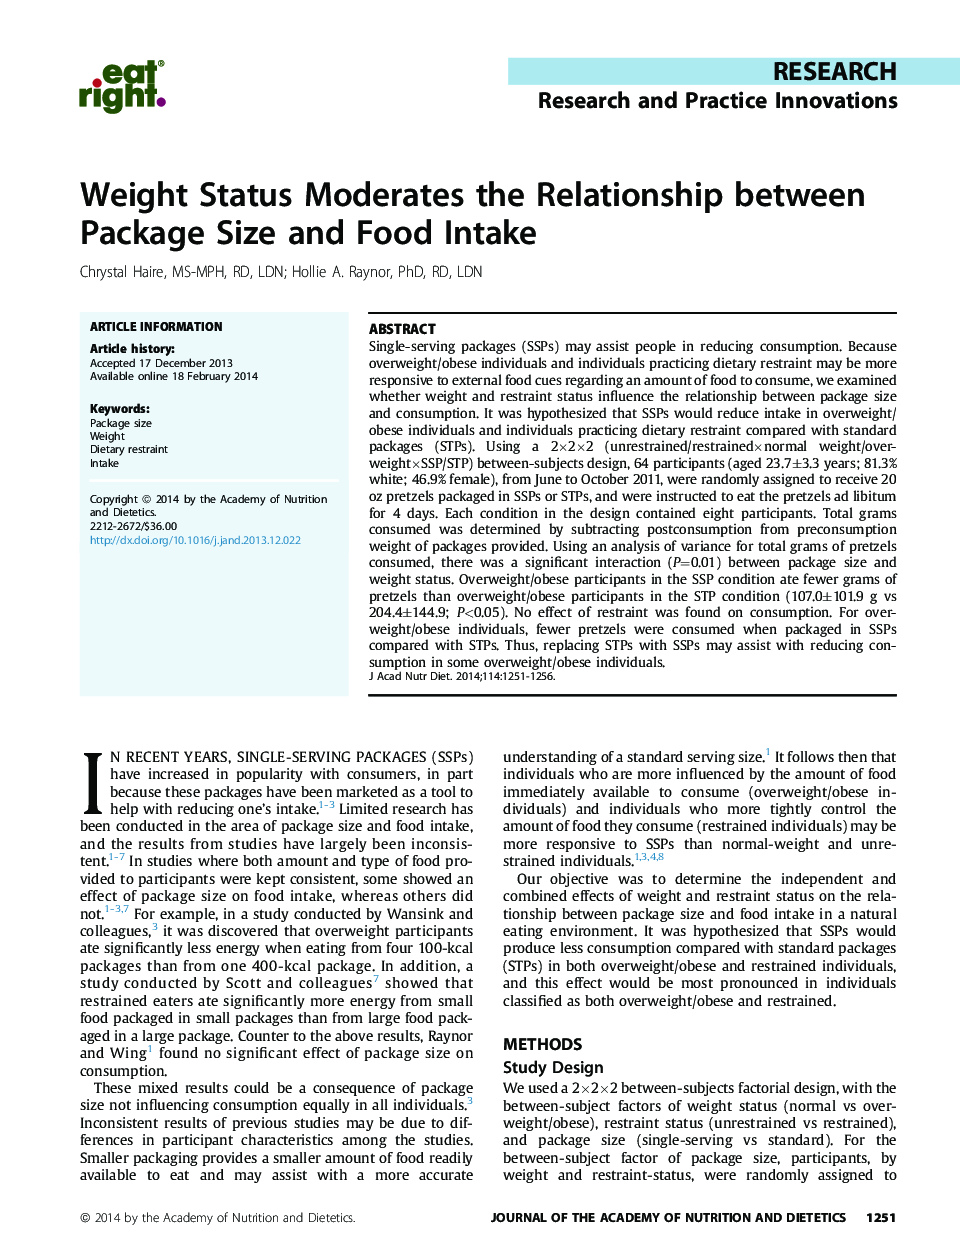 وضعیت وزن، رابطه بین میزان بسته بندی و مصرف غذا را تعدیل می کند 